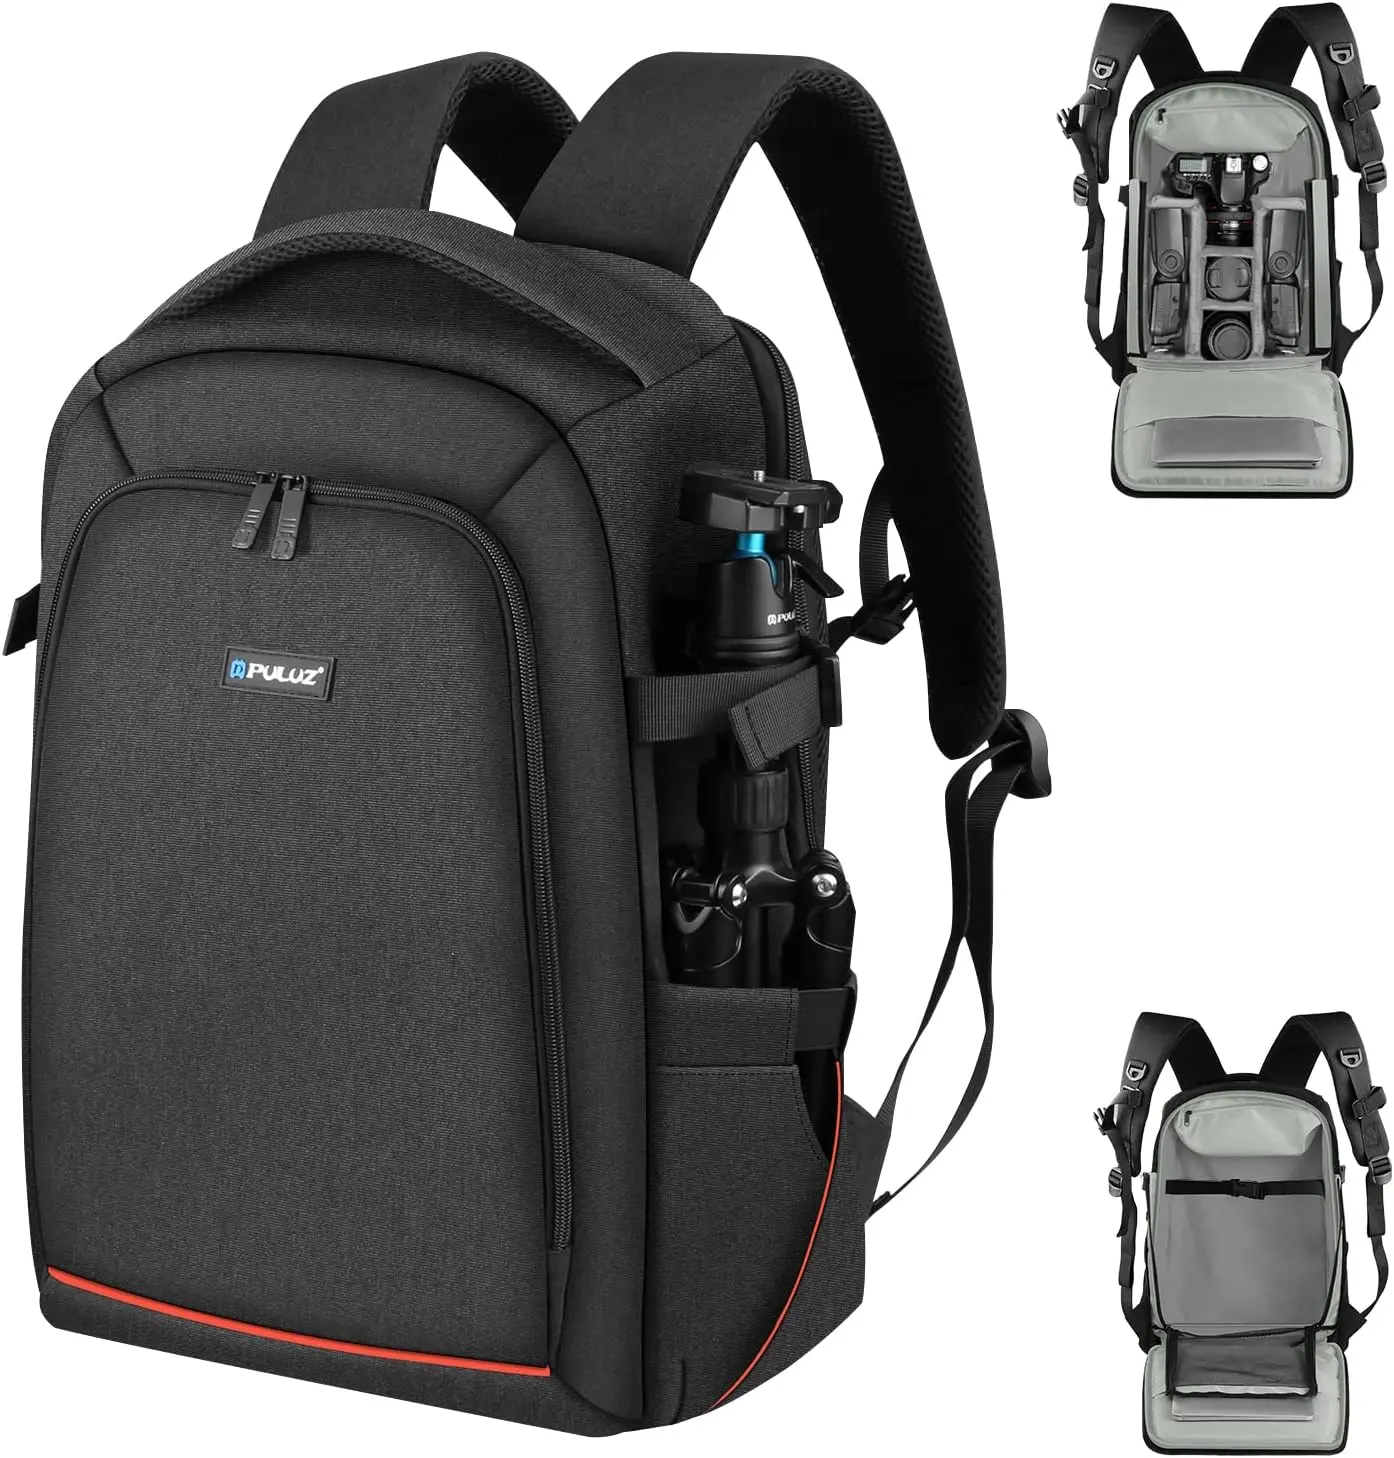 Рюкзак для камеры PULUZ, уличный водонепроницаемый чехол для камеры с защитой от царапин, совместимый с Sony/Canon/Nikon